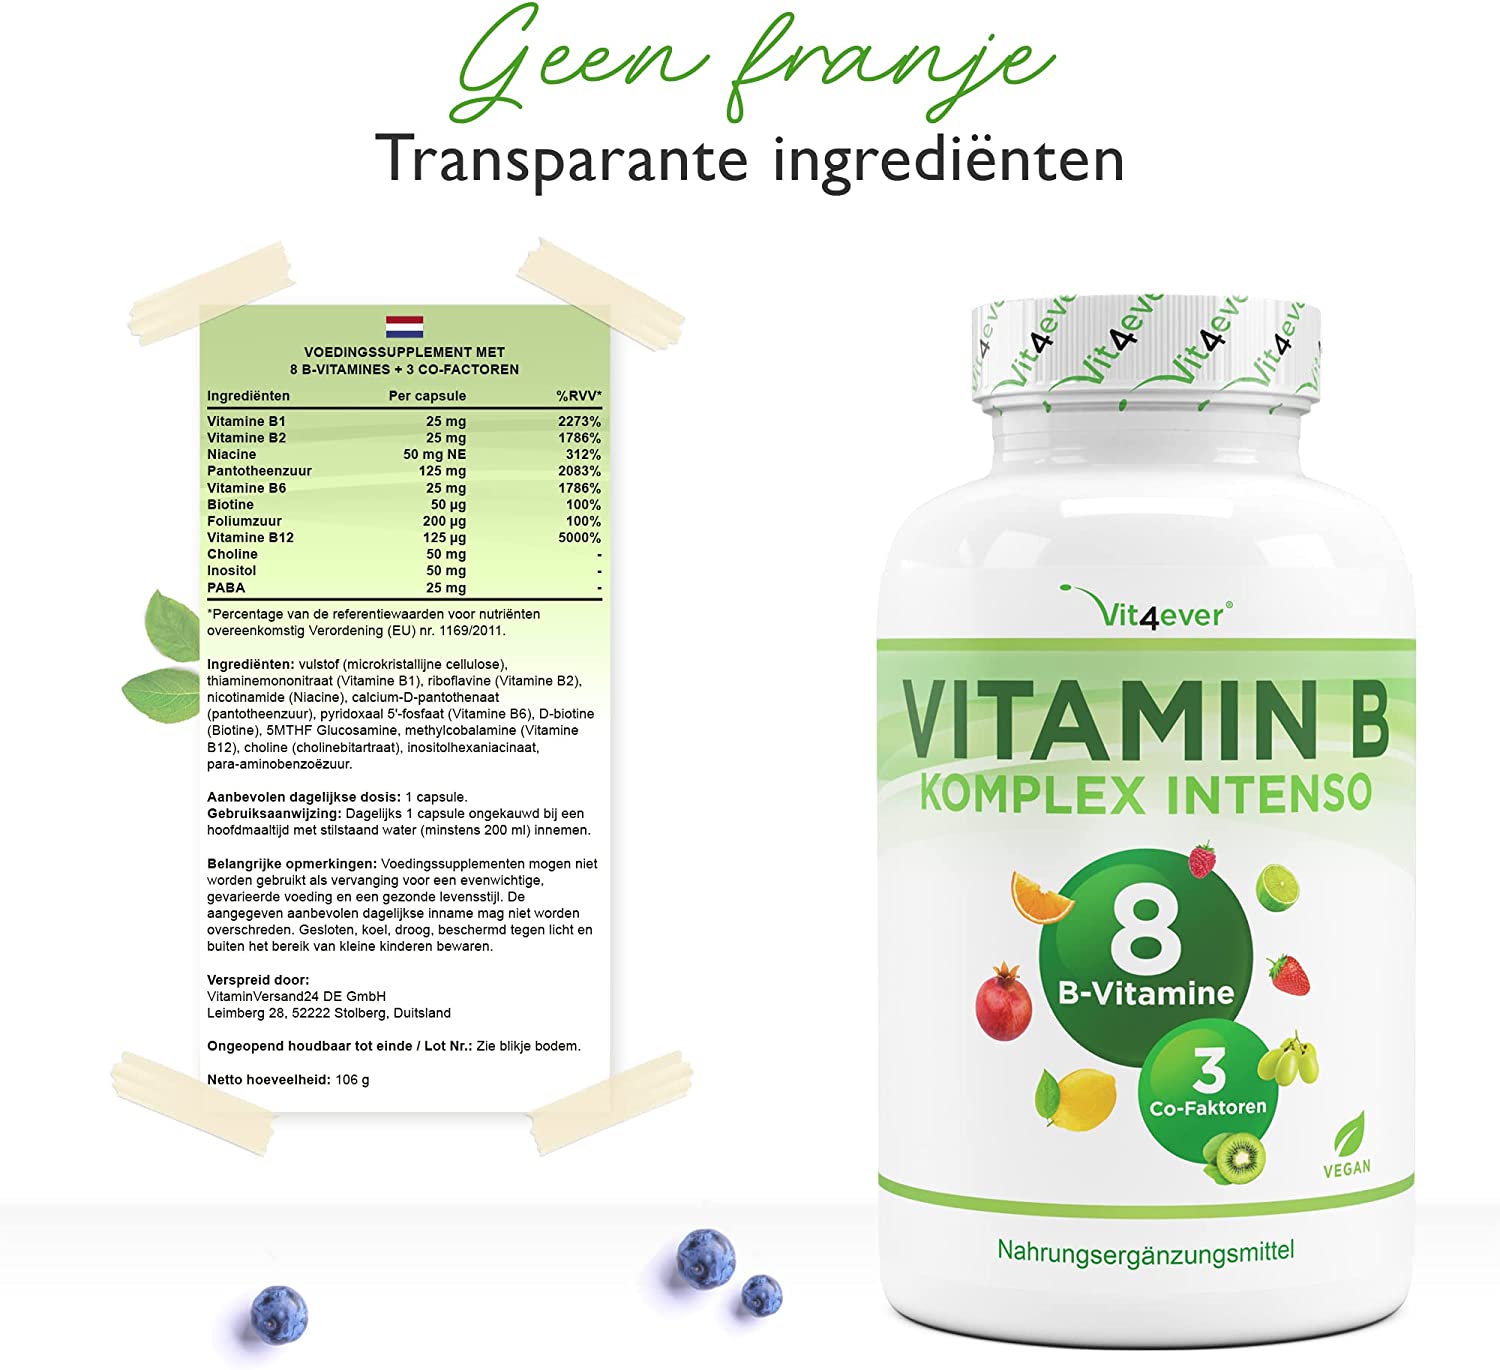 Vitamine B-complex Intenso - 240 capsules (6 maanden) - Premium: Met bio-actieve vitamine B-vormen + co-factoren - Tot 10 keer hogere dosering dan andere vitamine B-complexen - Veganistisch